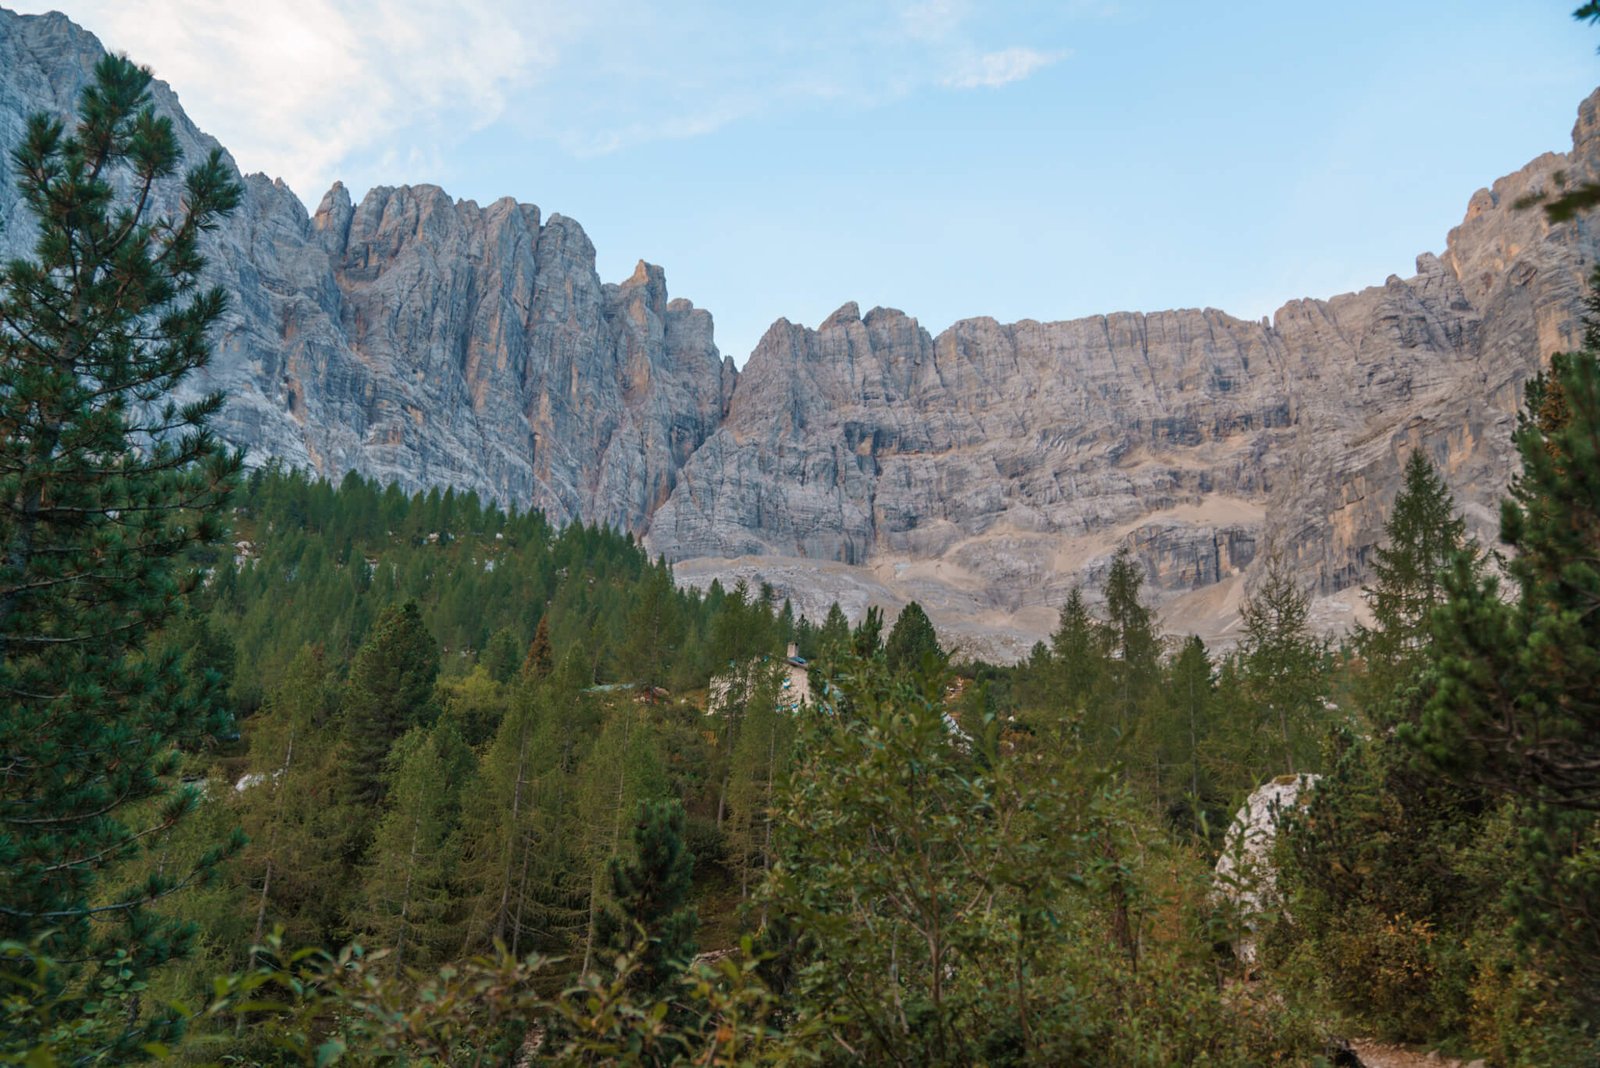 refuge at Lago di Sorapis in the Dolomites